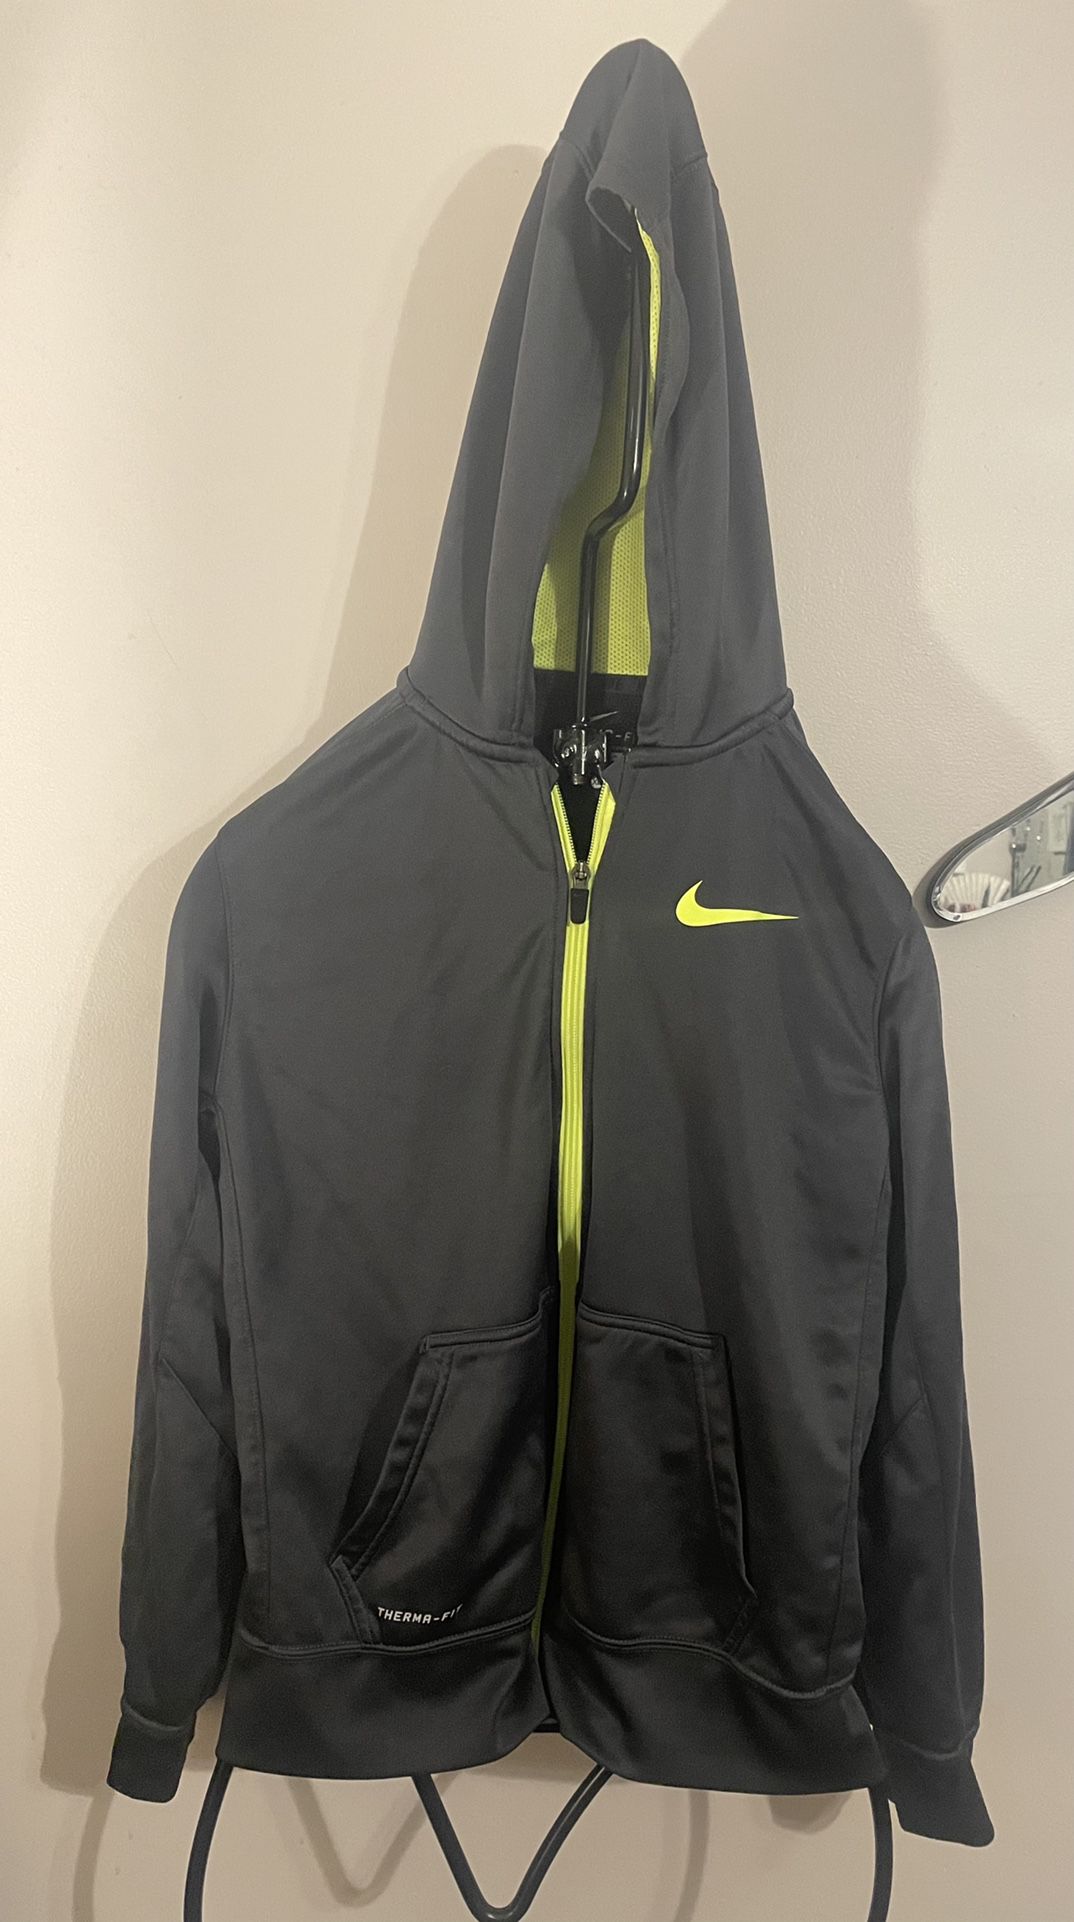 Boys XL  Nike Zip Hoodie Grey & Neon